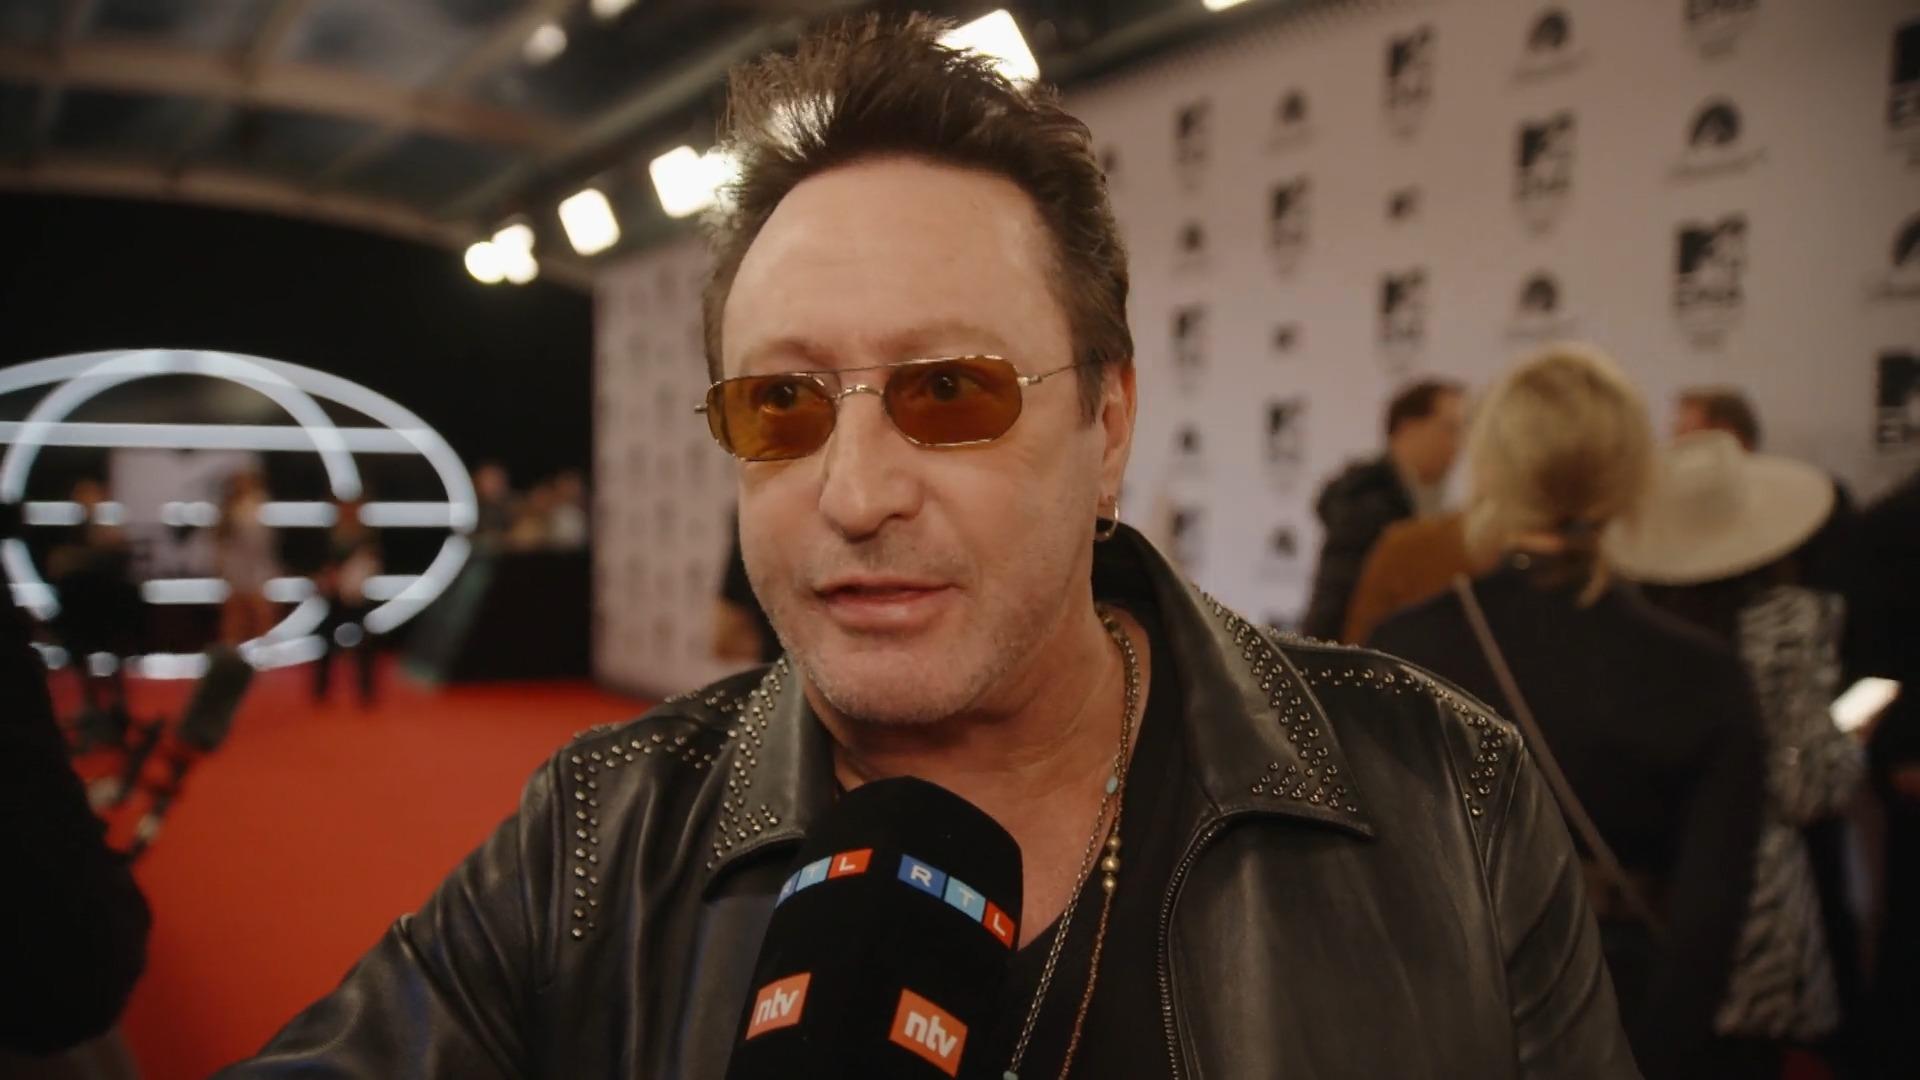 Lennon-Sohn im Interview: ER ist der Grund für "Hey Jude" RTL trifft Julian auf dem roten Teppich